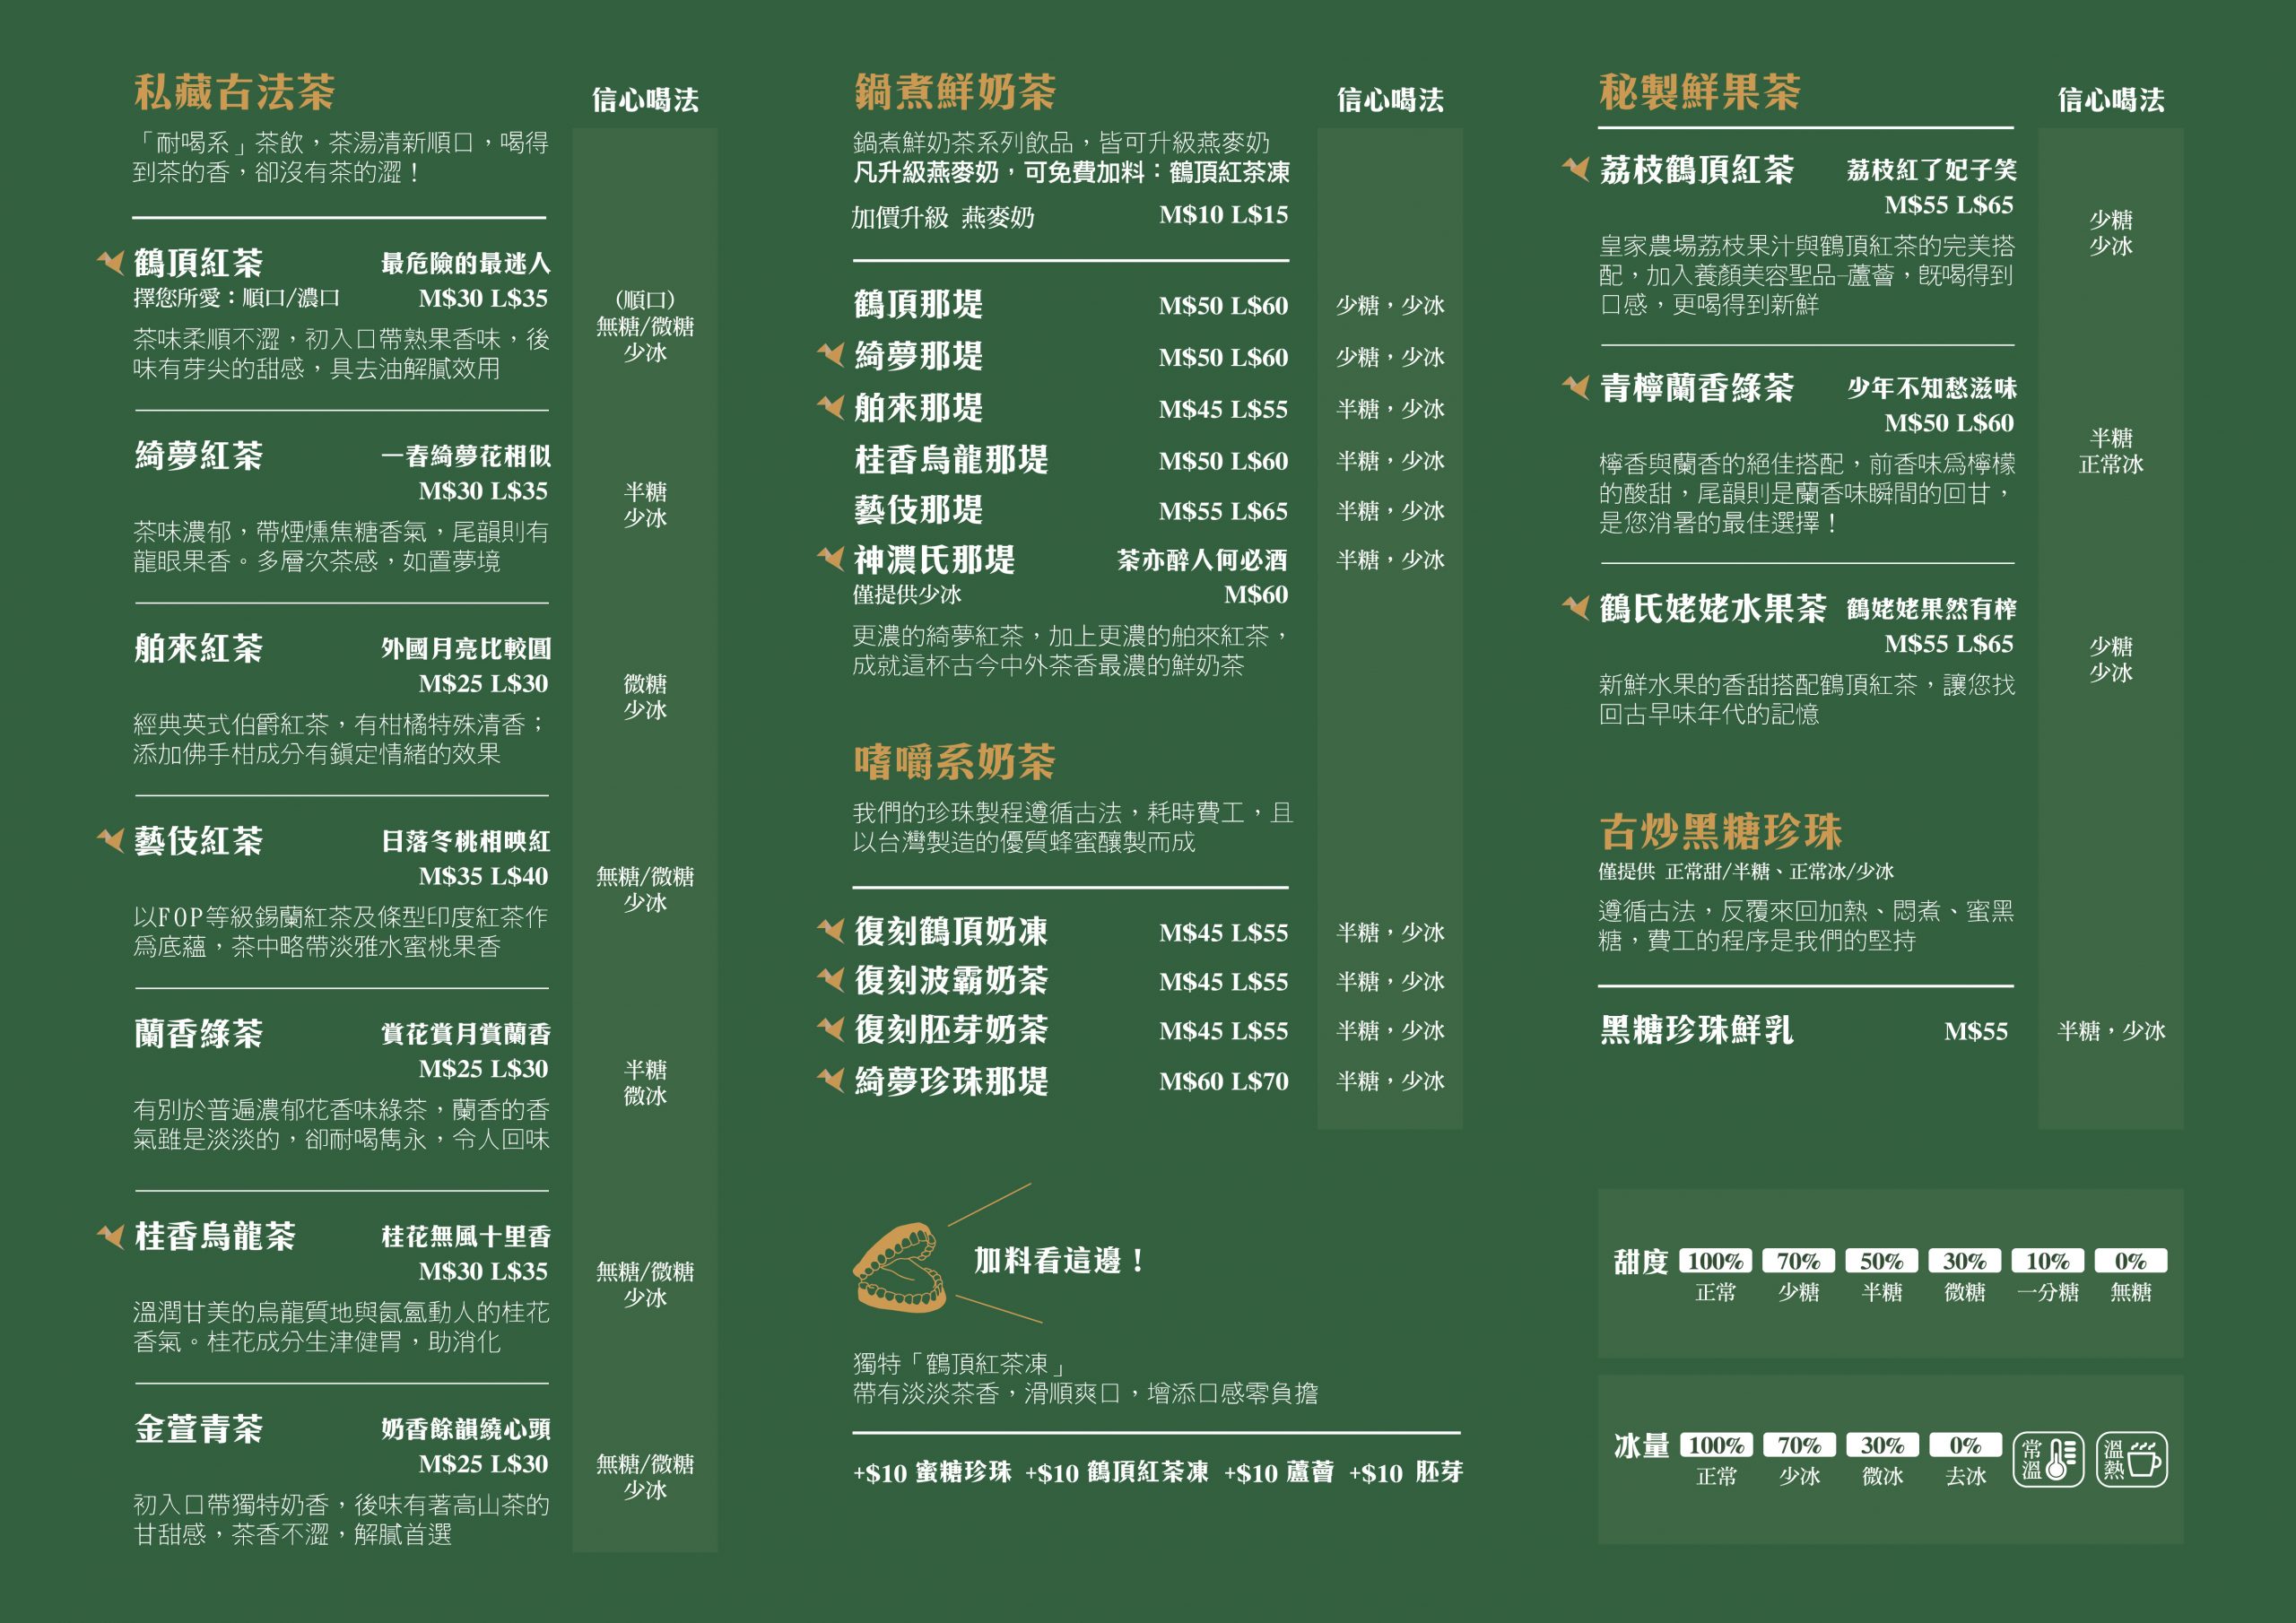 鶴茶樓-菜單-中文版